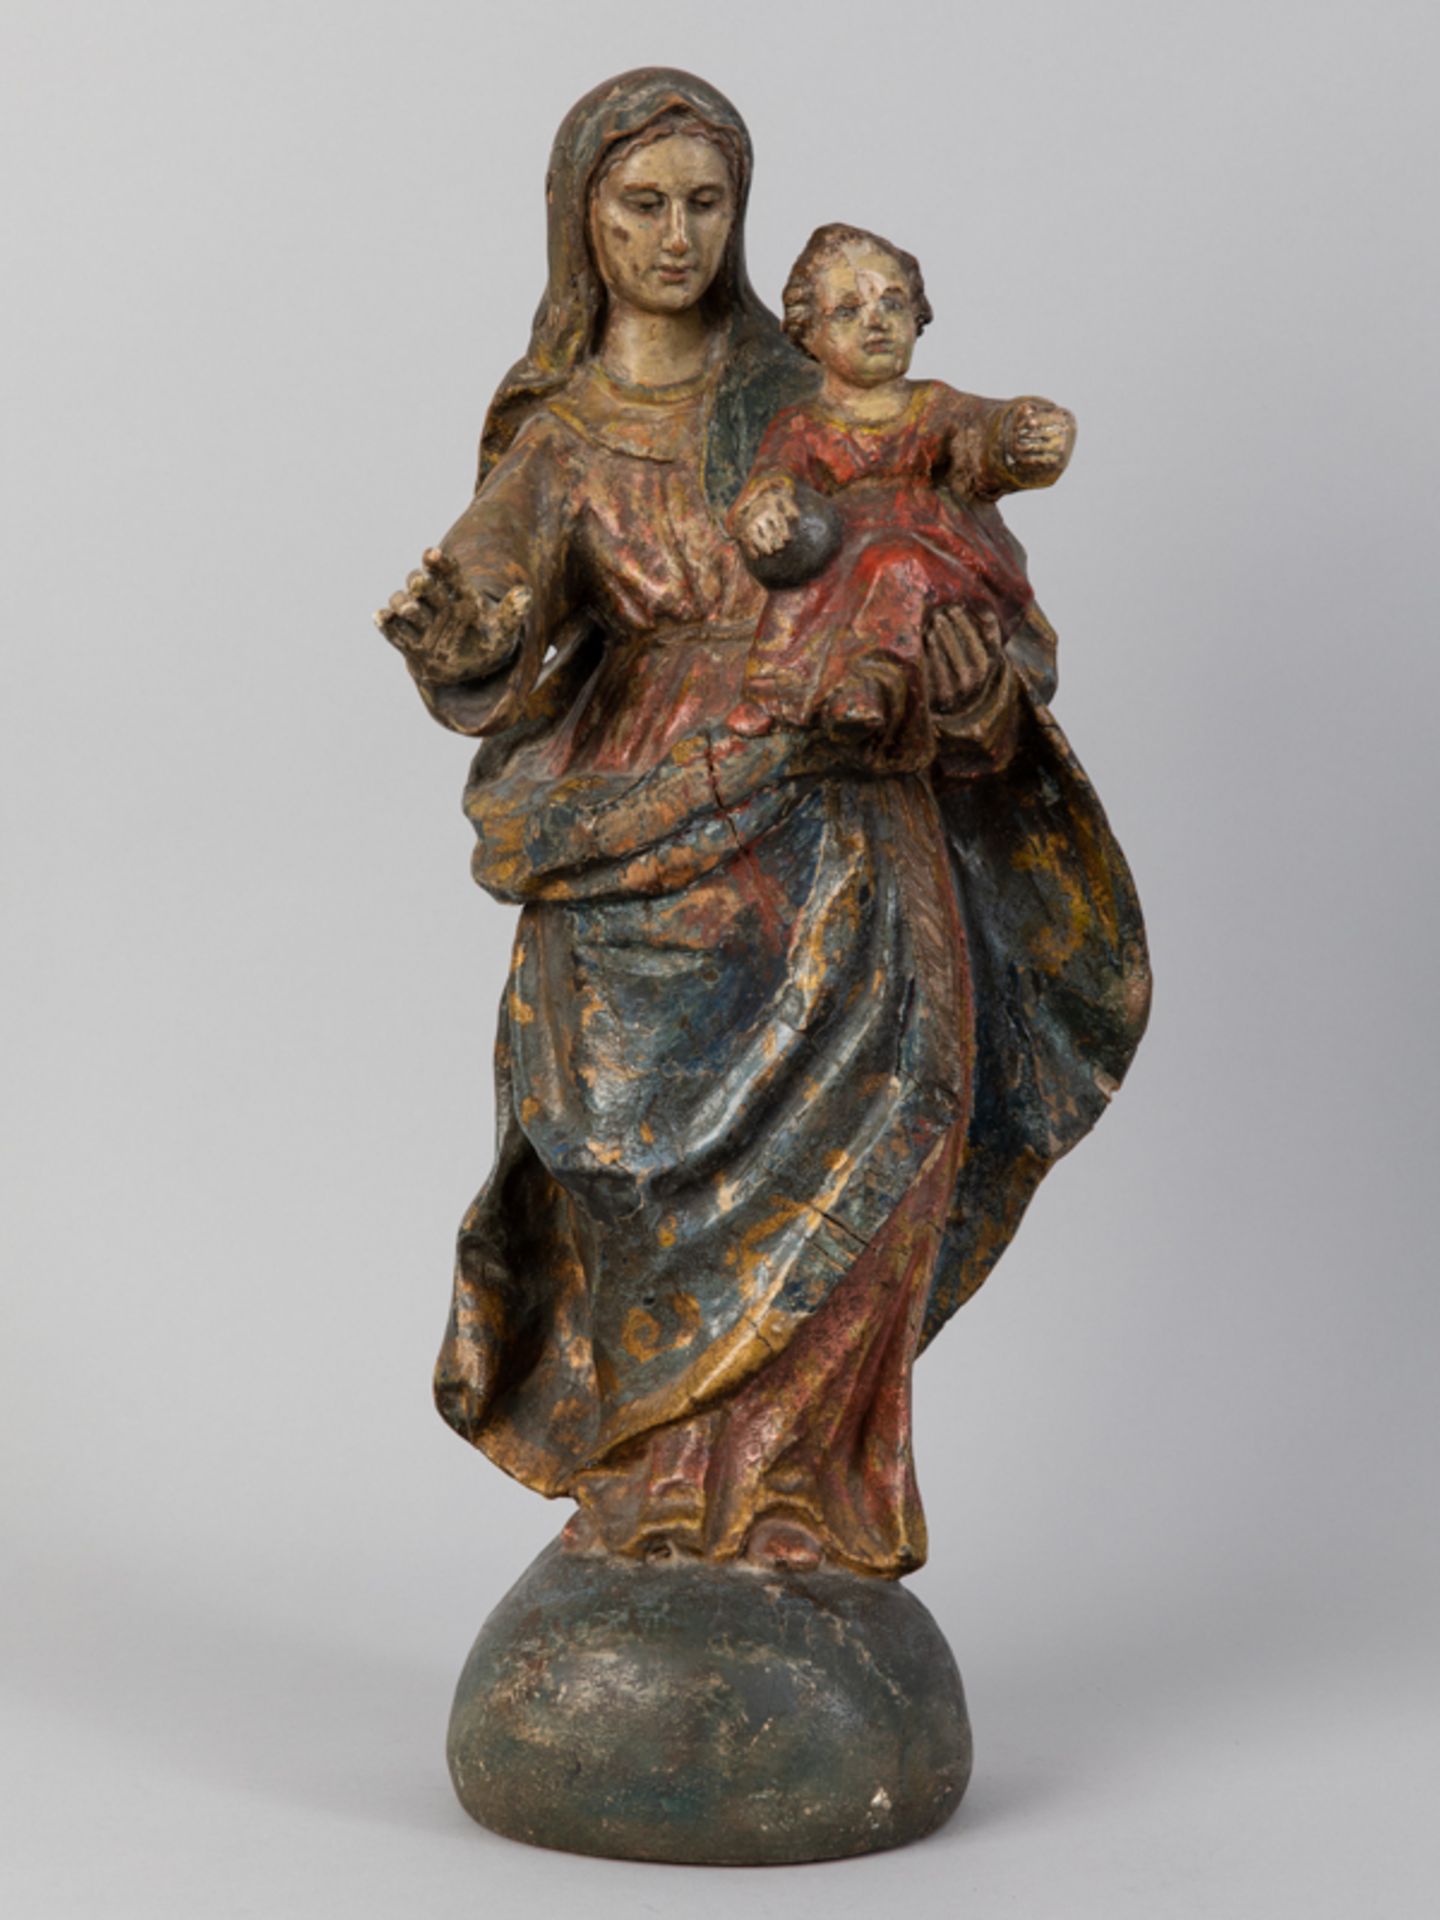 Muttergottes-Skulptur mit Christuskind auf Halbkugel, vermutlich Mittel- oder Süddeutschland, wohl